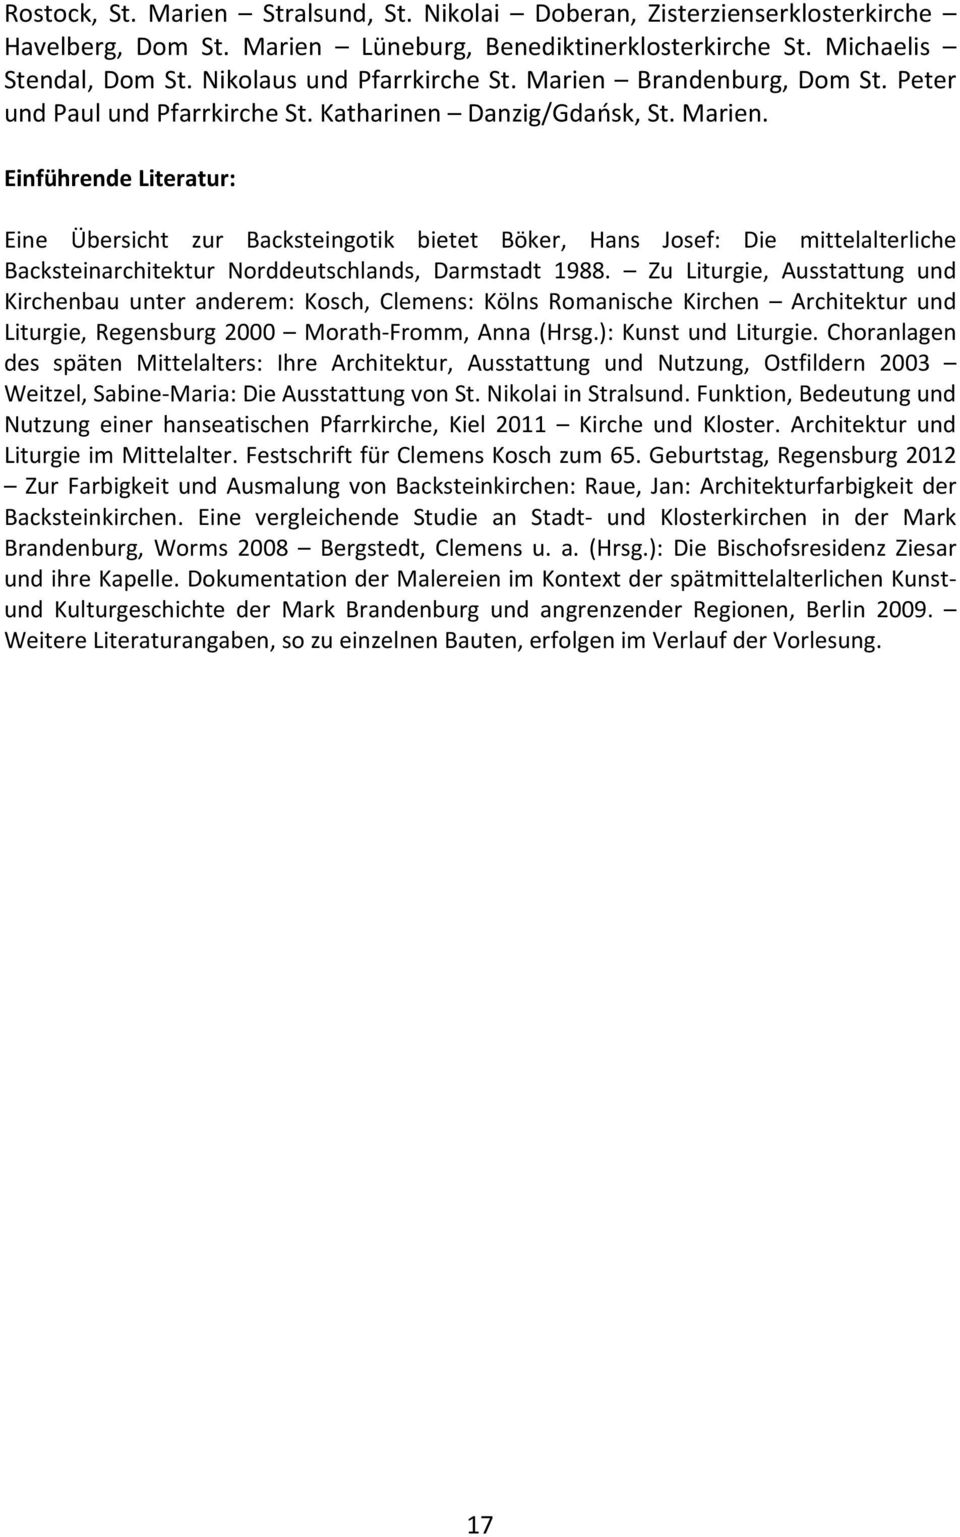 Einführende Literatur: Eine Übersicht zur Backsteingotik bietet Böker, Hans Josef: Die mittelalterliche Backsteinarchitektur Norddeutschlands, Darmstadt 1988.